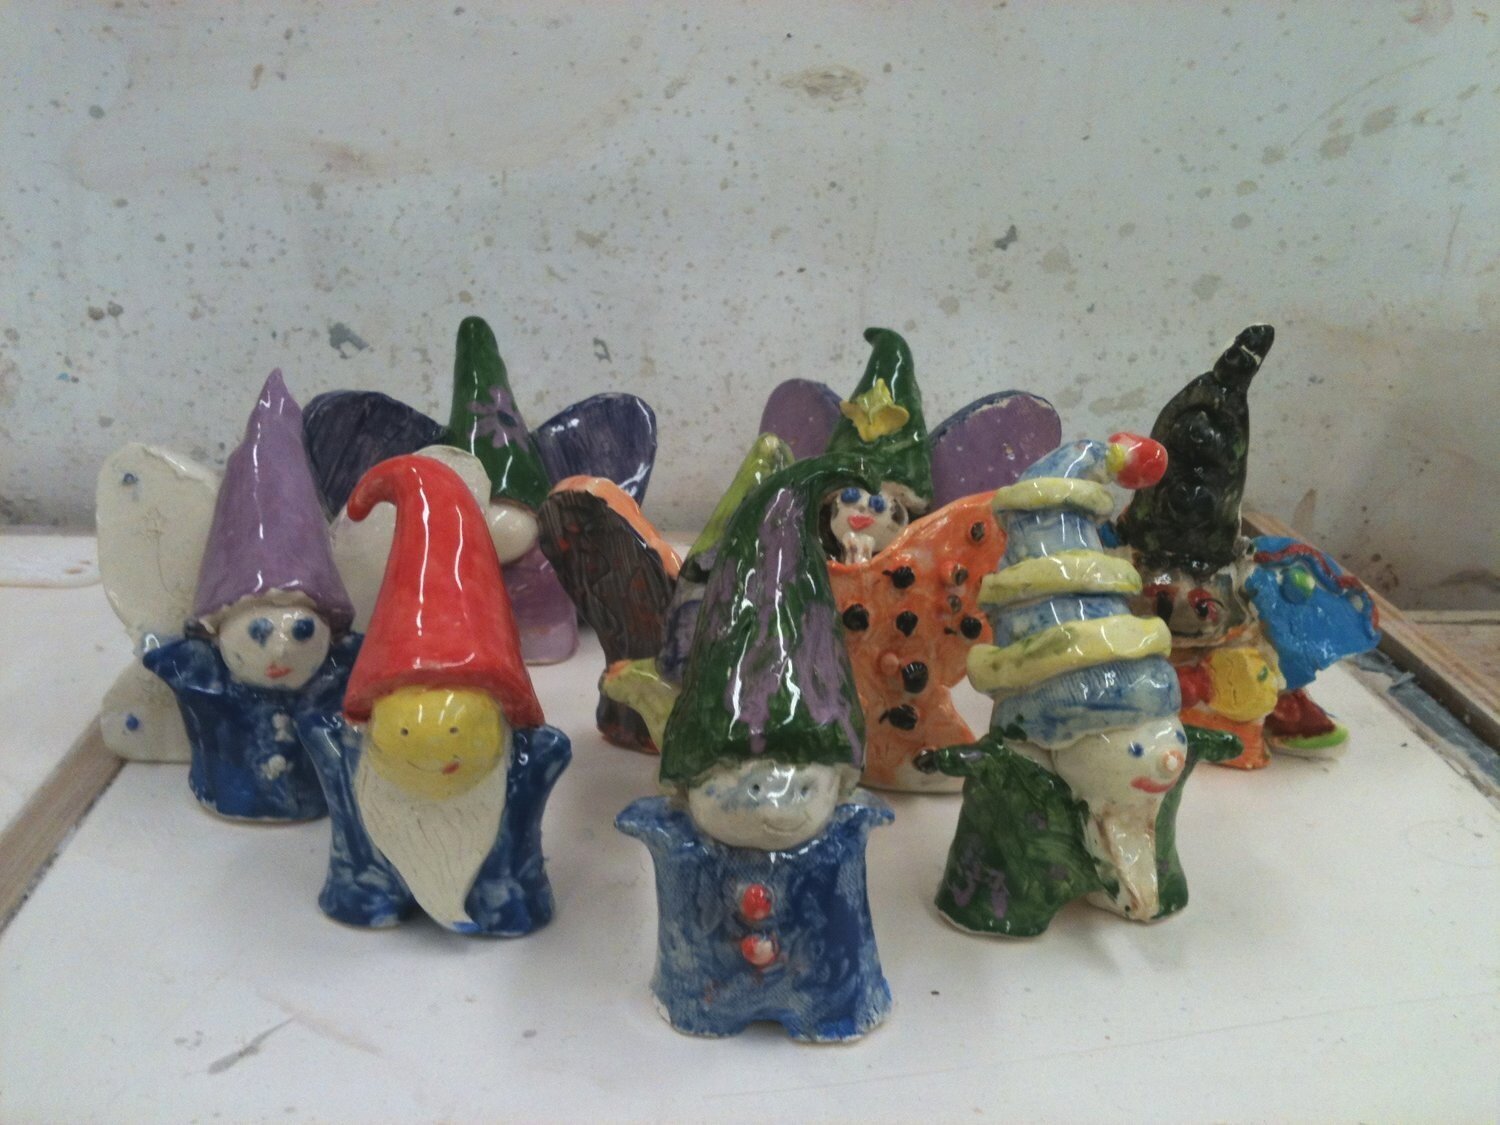 Garden gnomes and fairies